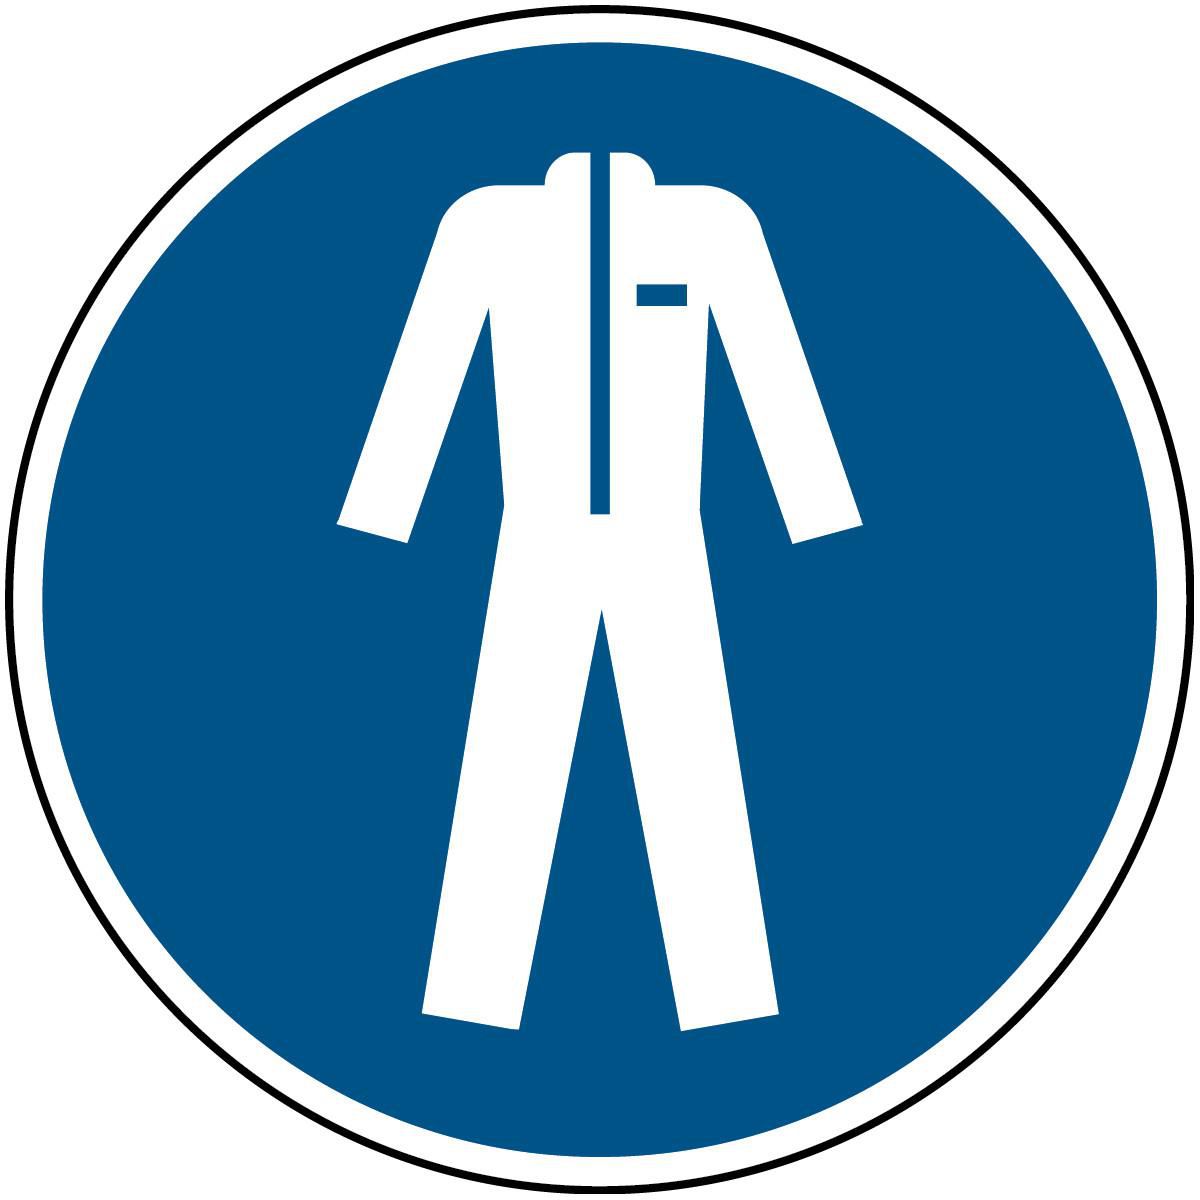 BRADY ISO-Sicherheitsschild - Schutzkleidung tragen, Rund, Weiss auf blau, Polyester, 1Stück (PIC M0